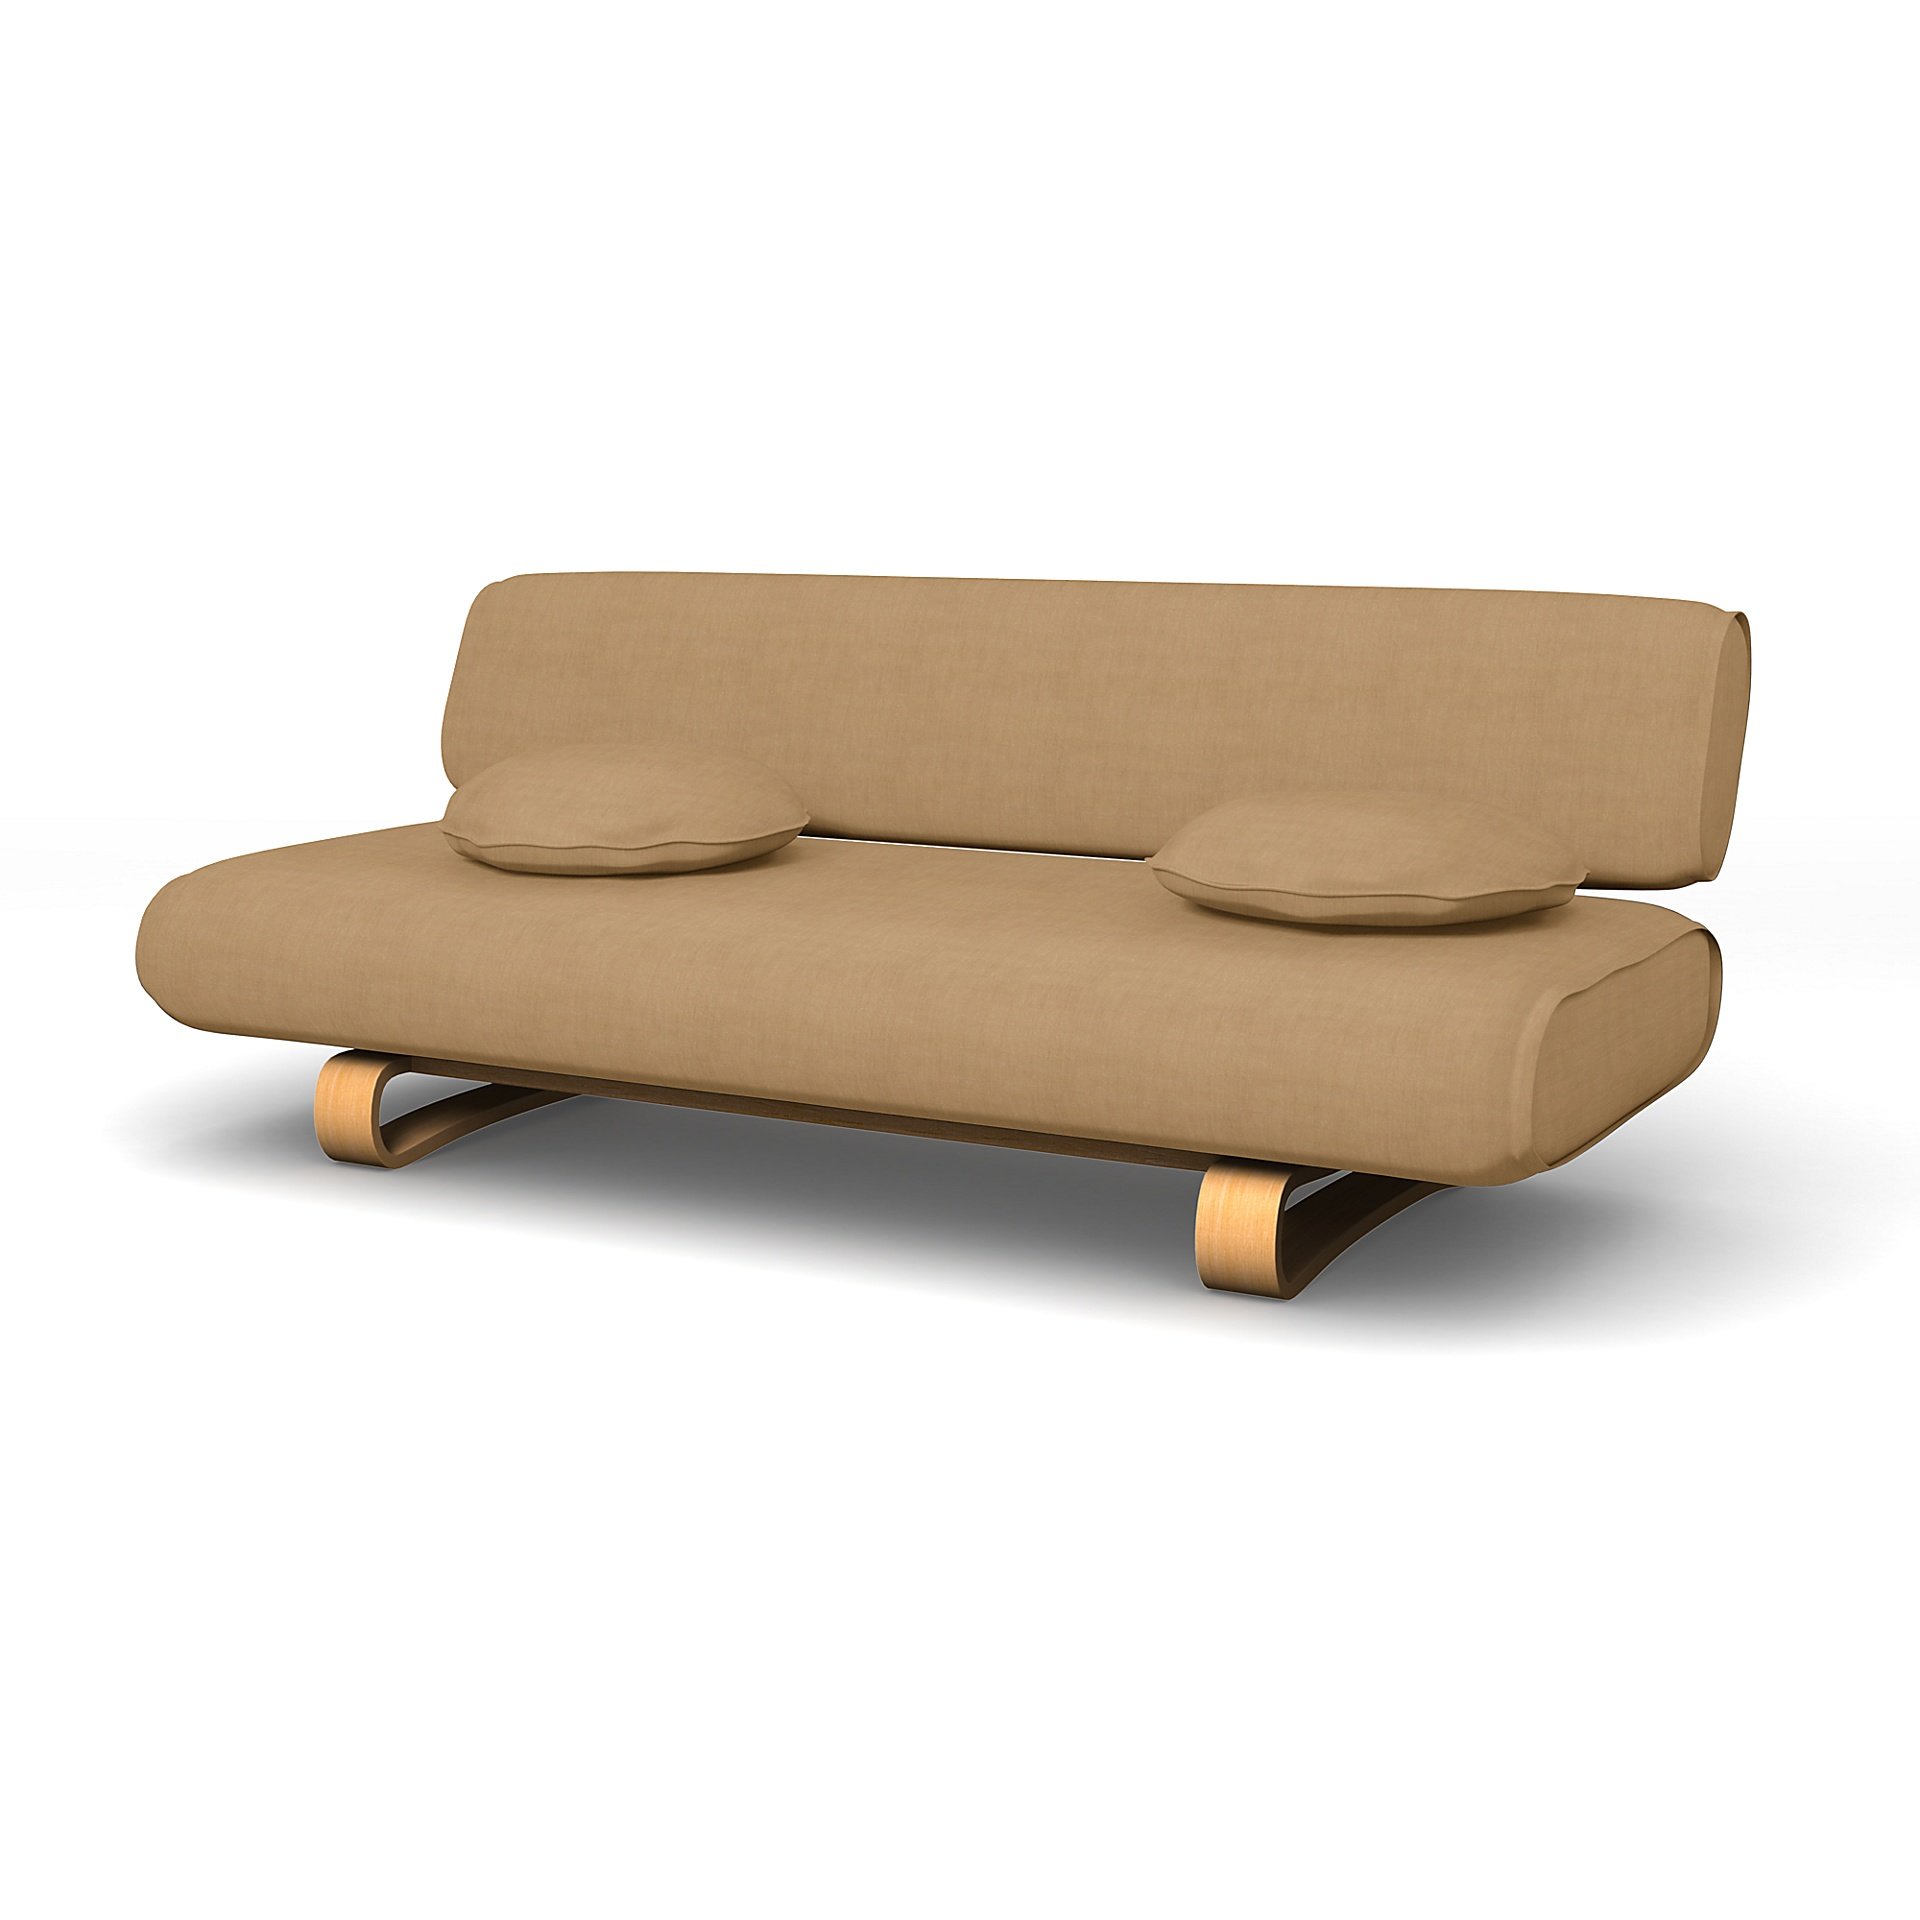 IKEA - Allerum Sofa Bed Cover, Hemp, Linen - Bemz